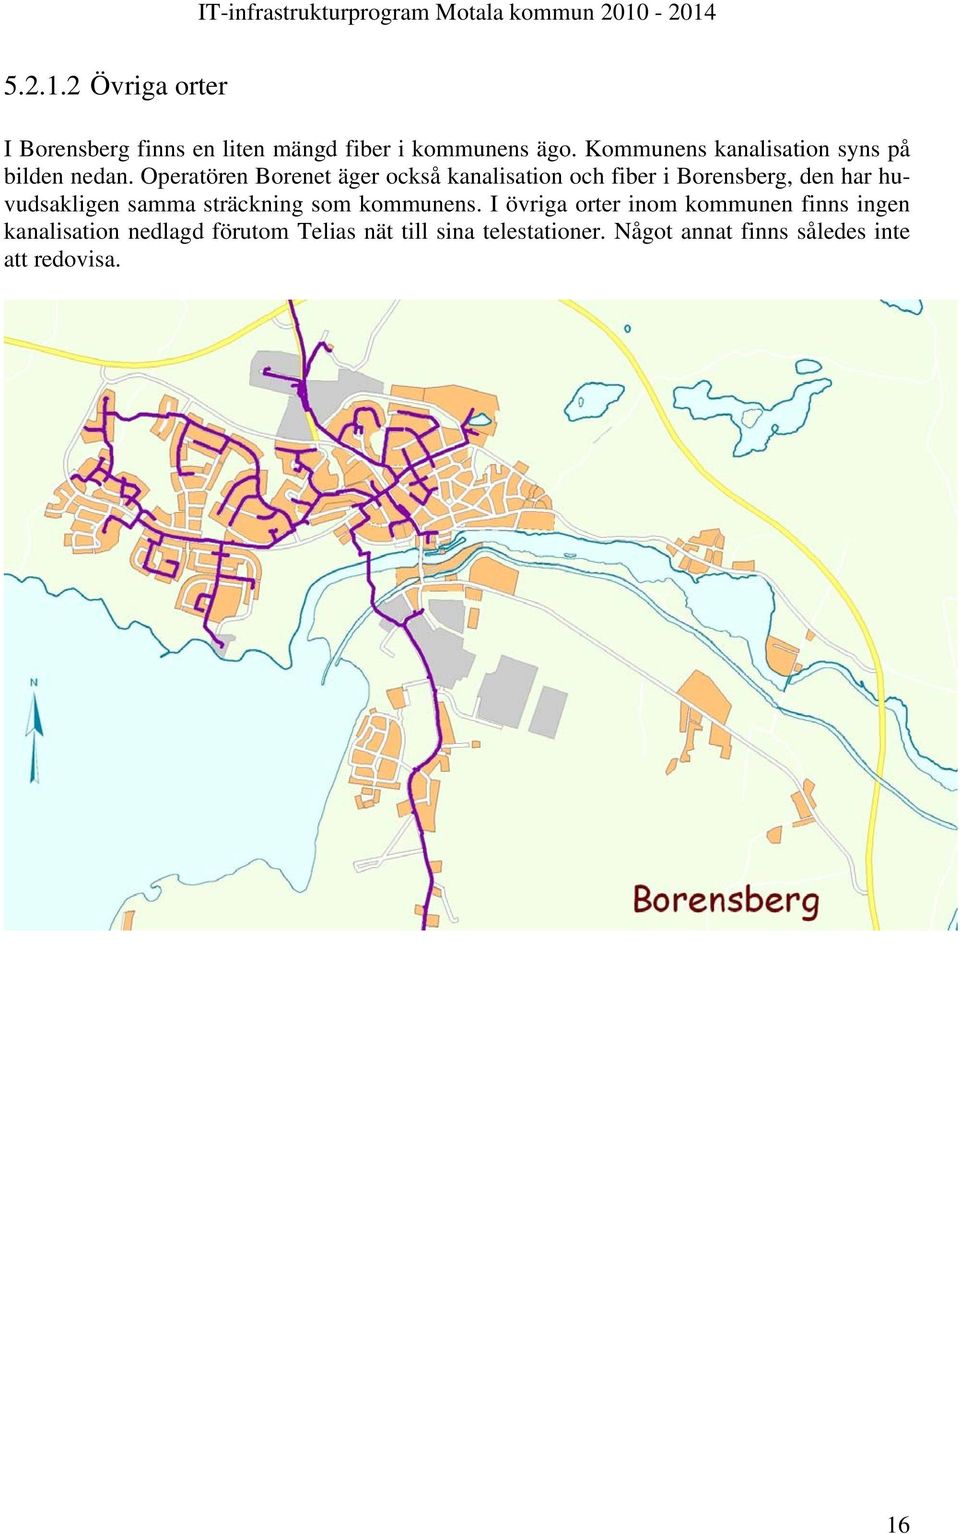 Operatören Borenet äger också kanalisation och fiber i Borensberg, den har huvudsakligen samma